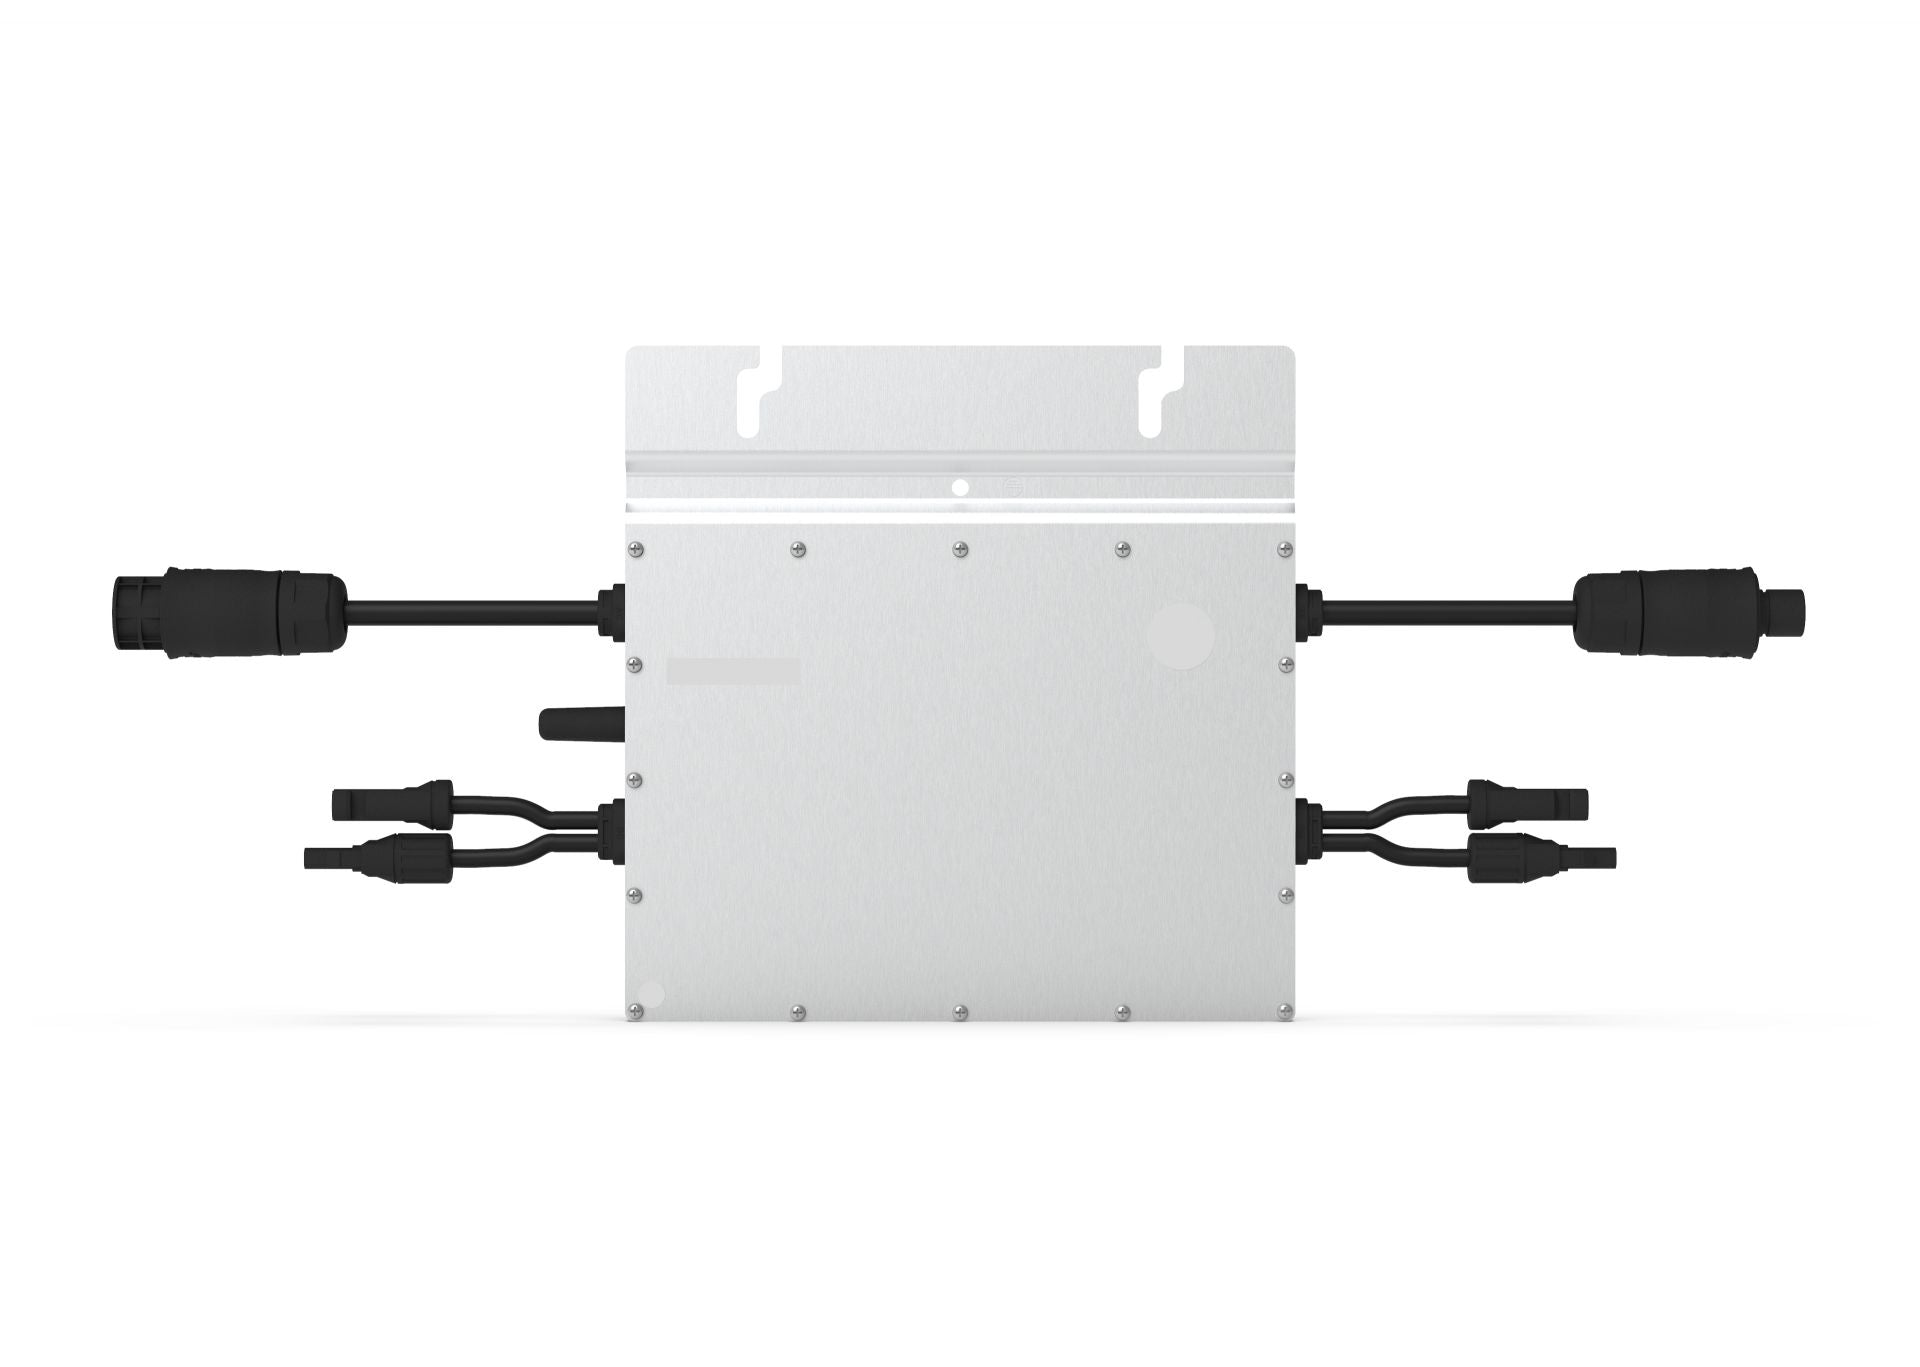 Hoymiles HM-800 Solar Mikrowechselrichter für 2 PV Module von je 320Wp bis 500Wp Wechselrichter für Balkonkraftwerk